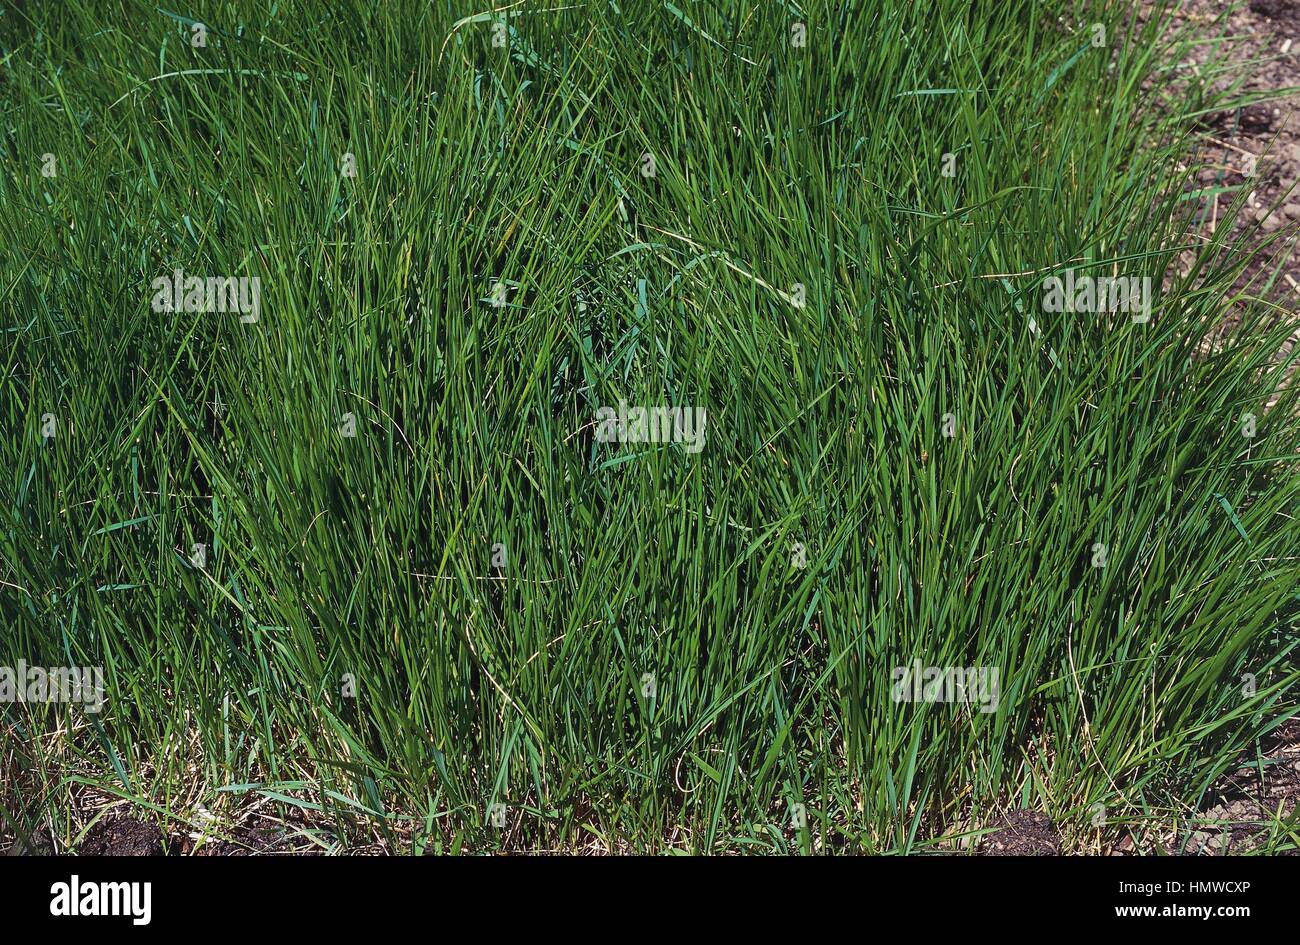 Heath false brome (Brachypodium pinnatum), Poaceae. Stock Photo